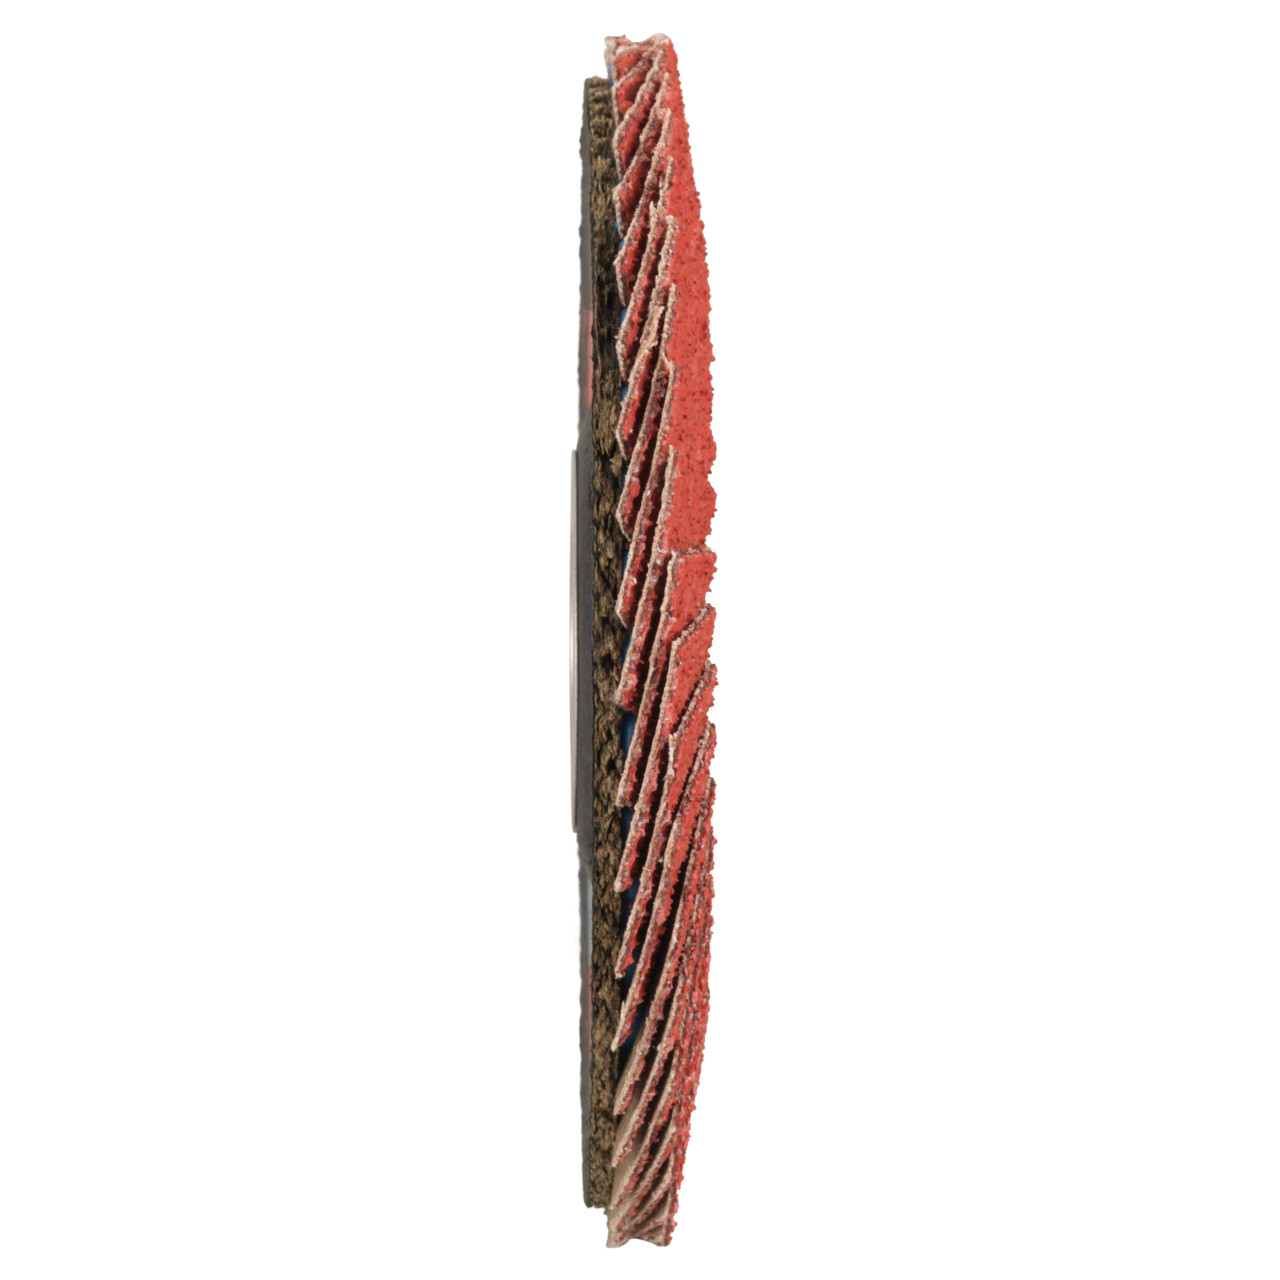 Tyrolit Getande borgring DxH 115x22,23 CERAMIC voor roestvrij staal, P60, vorm: 28A - rechte uitvoering (glasvezeldragerhuisversie), Art. 719798